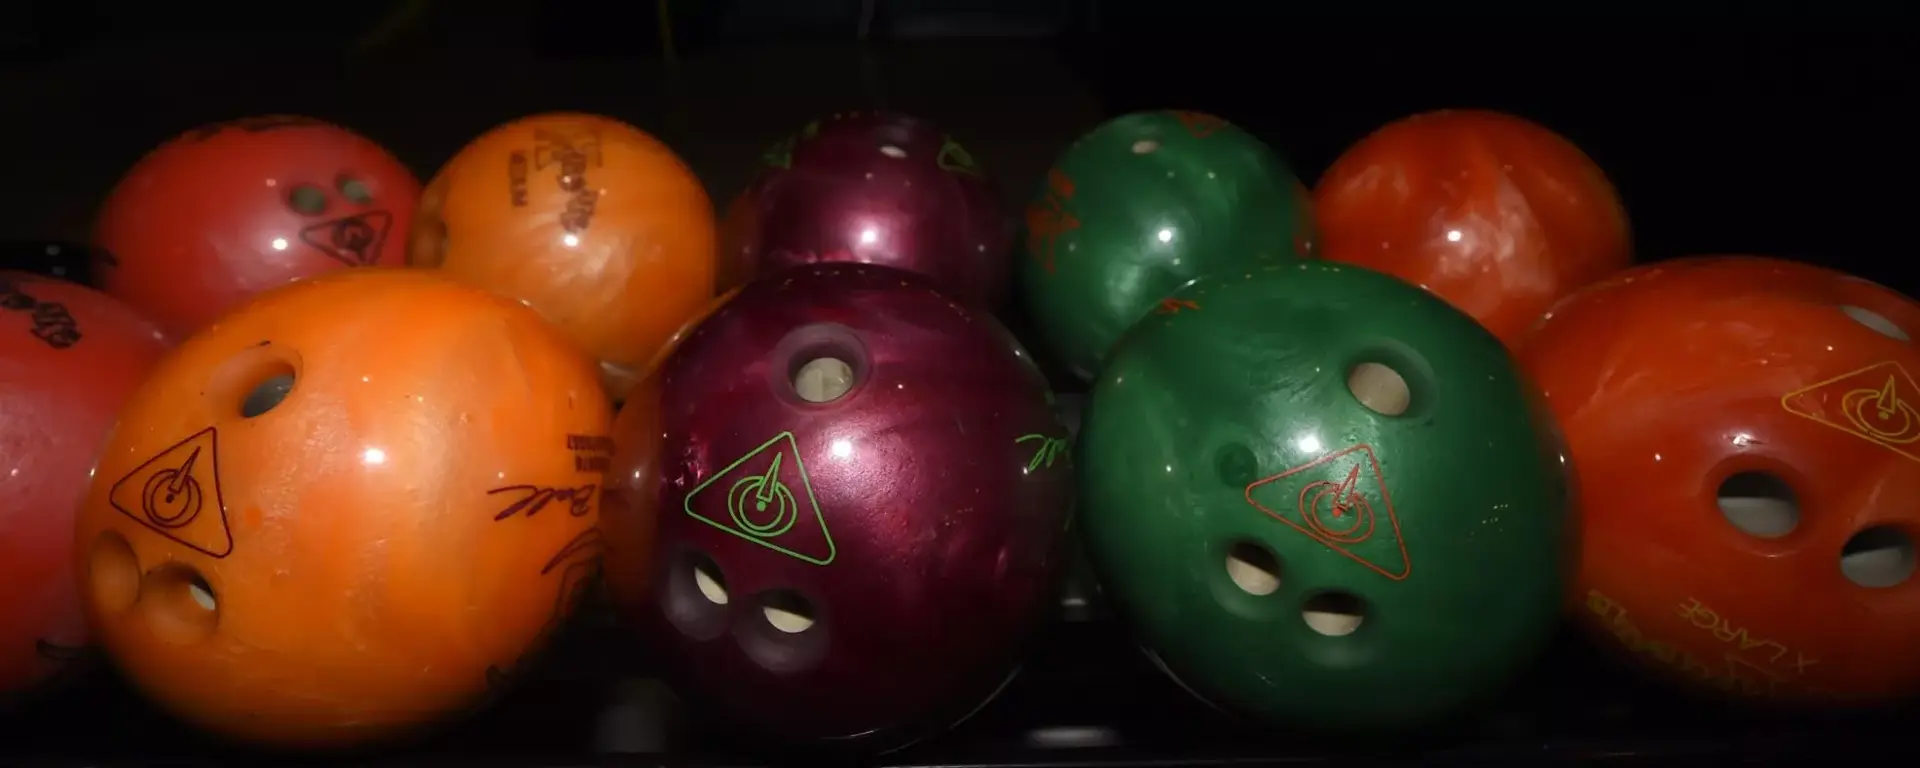 Bowling balls at Hollywood Bowl